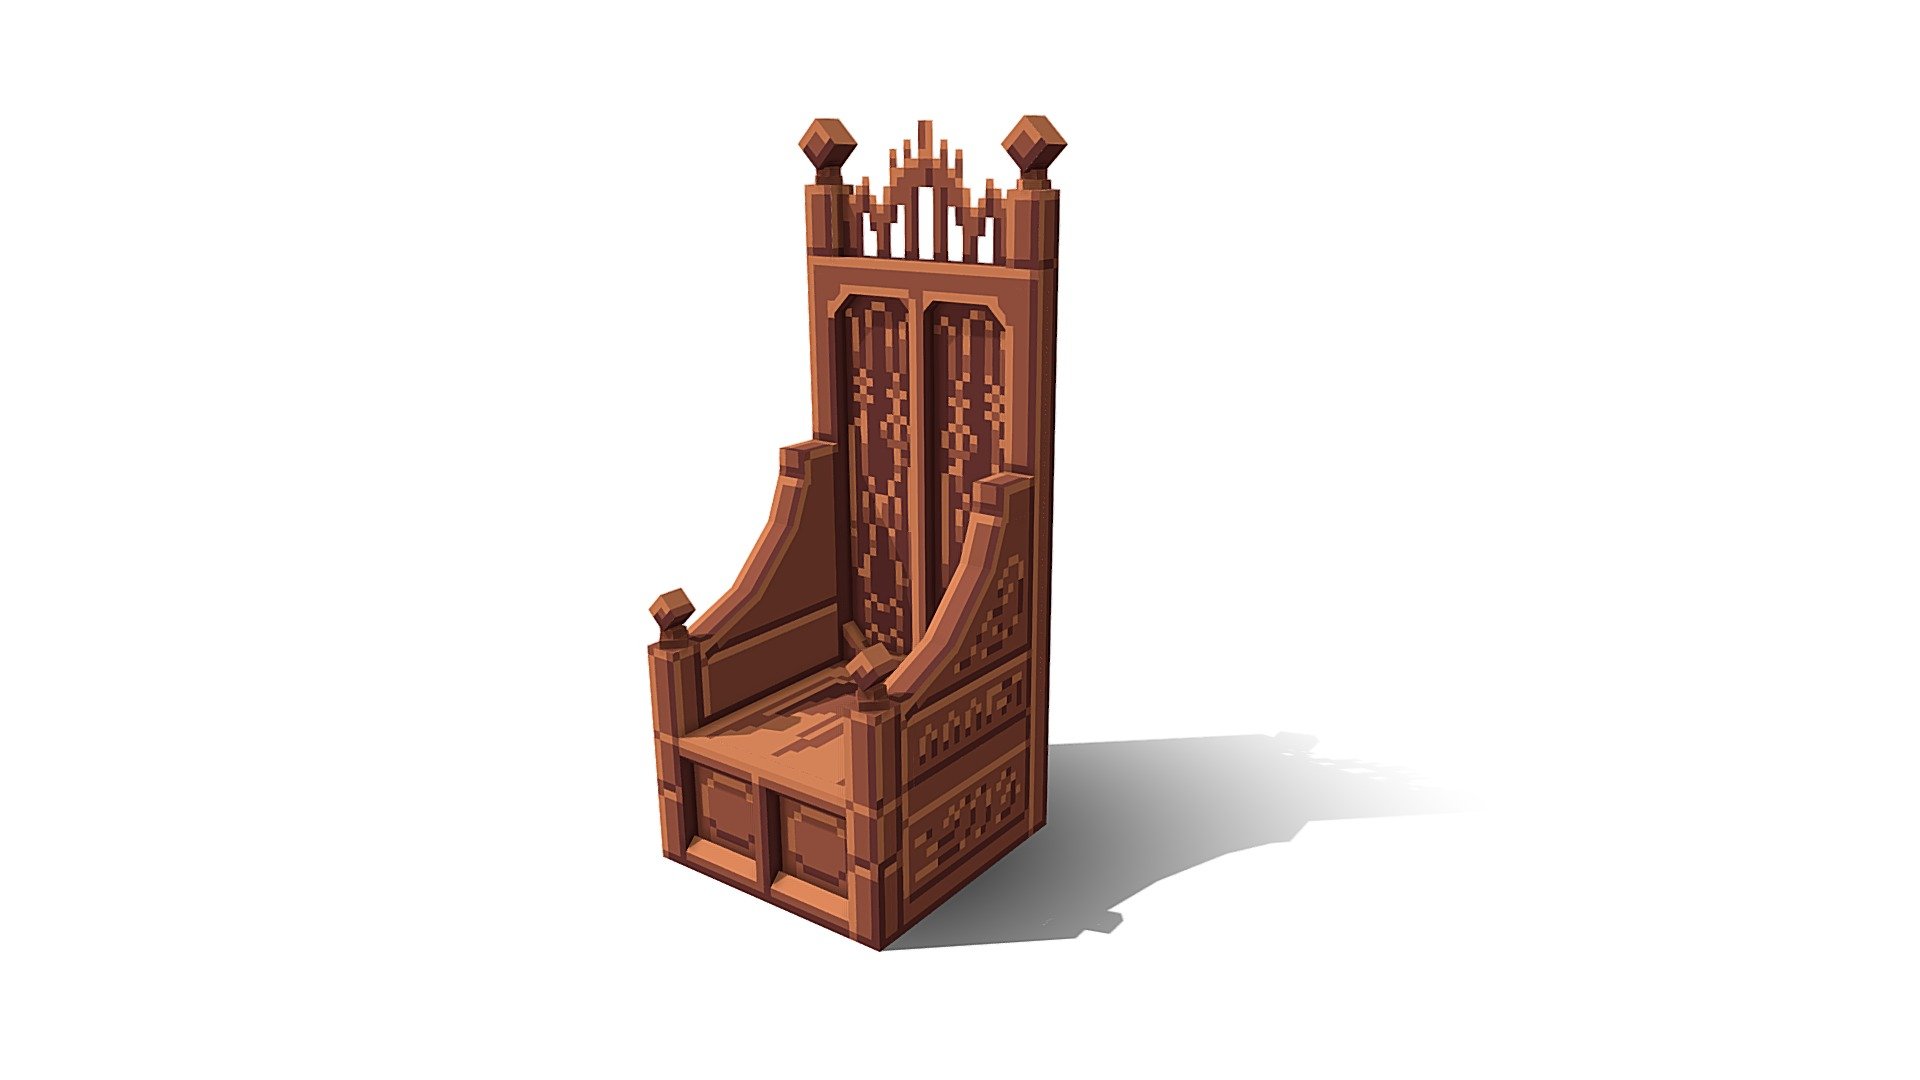 Medieval chair - Medieval chair - 3D model by Hongddi (@Hongddibro) 3d model